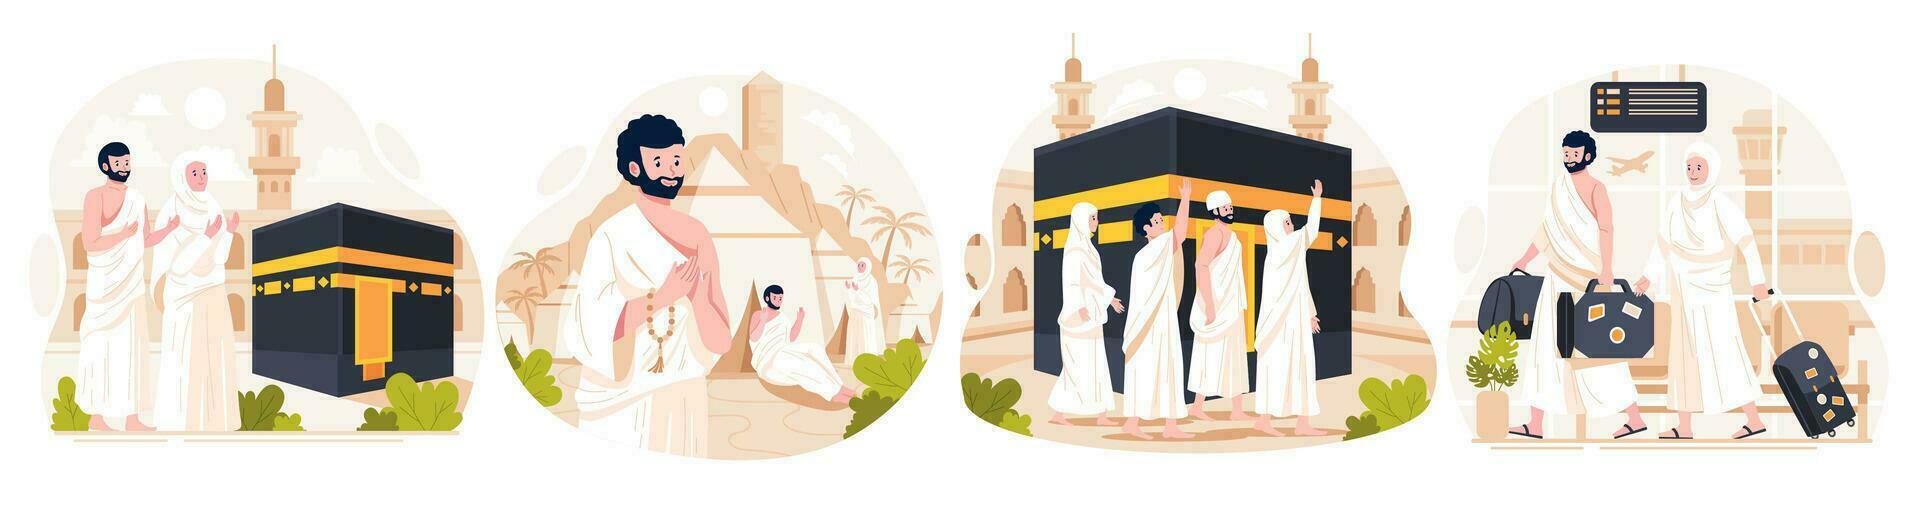 Illustration einstellen von islamisch hajj Pilgerfahrt. Muslim Menschen führt aus islamisch hajj Pilgerfahrt. Mann und Frau hajj Zeichen tragen ihram Kleider mit ein Kaaba Hintergrund. Vektor Illustration